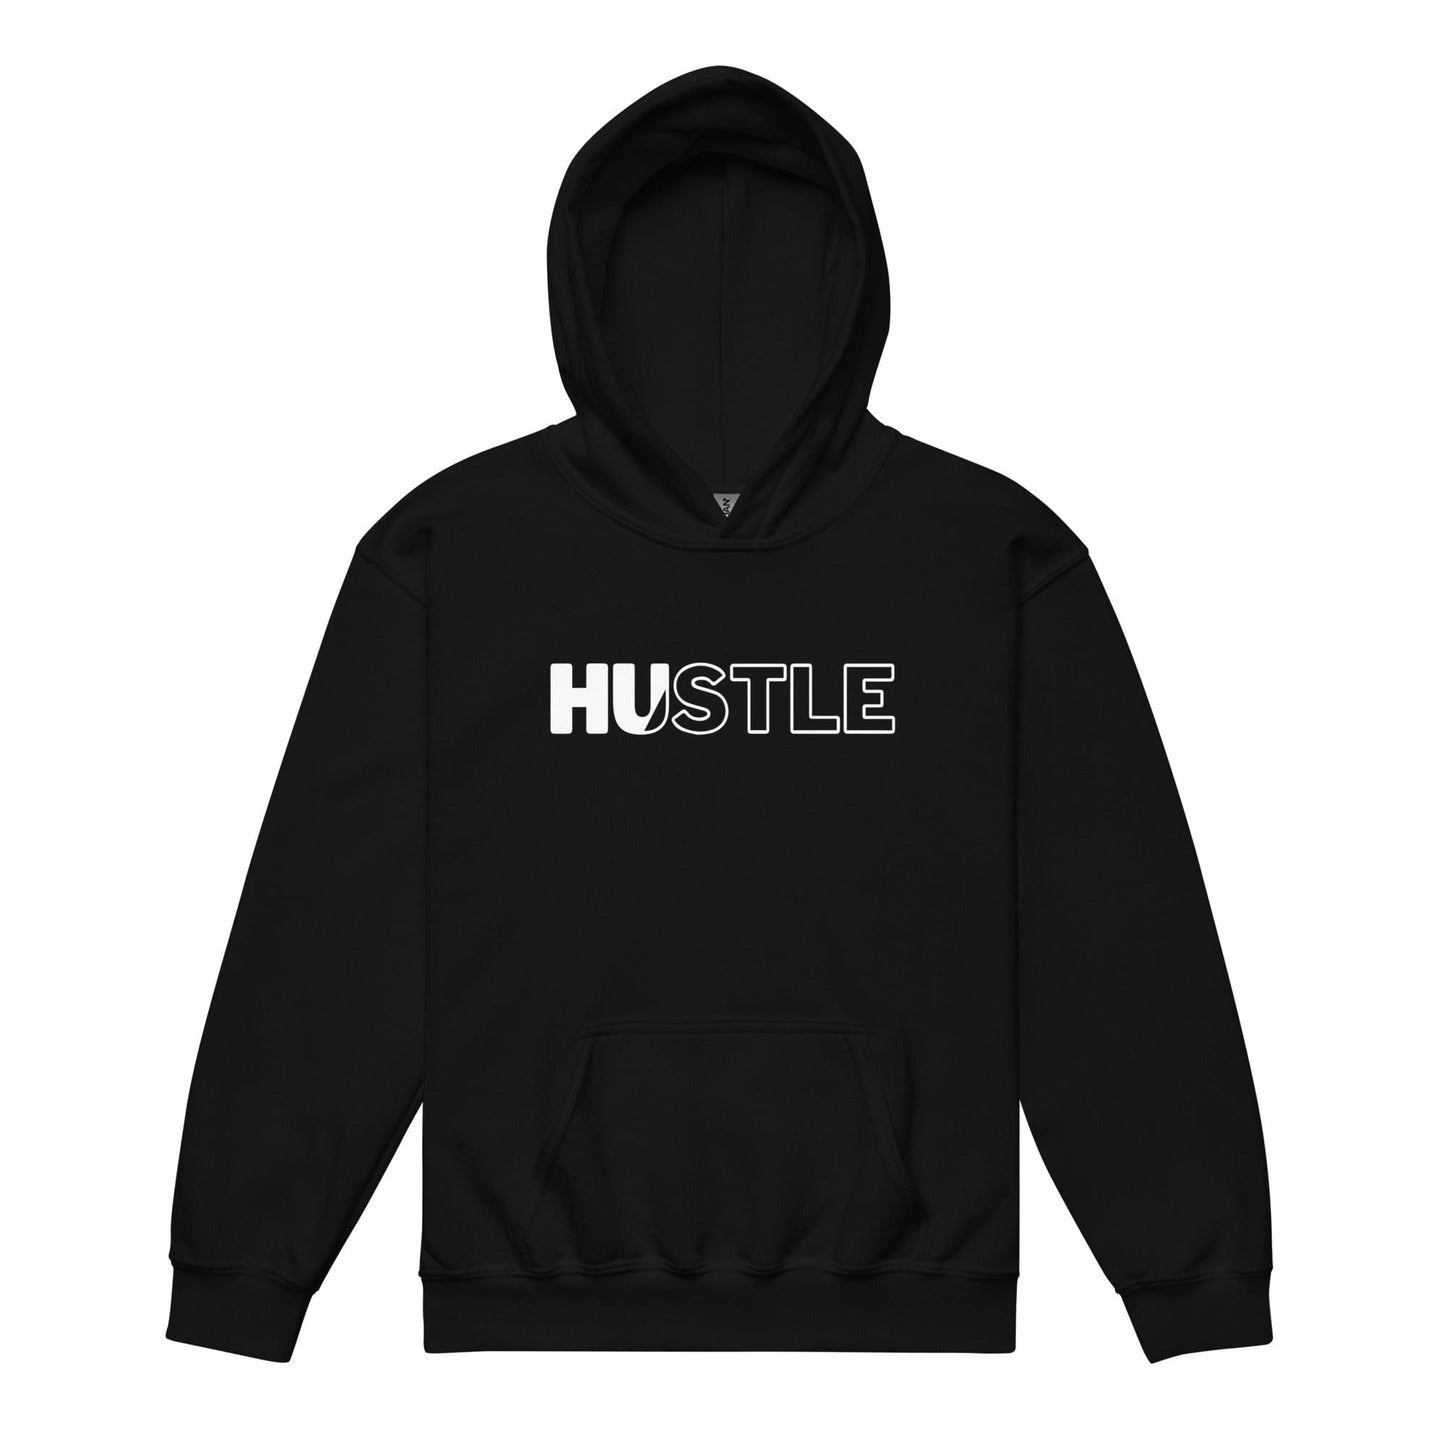 Hustle - Youth Hoodie